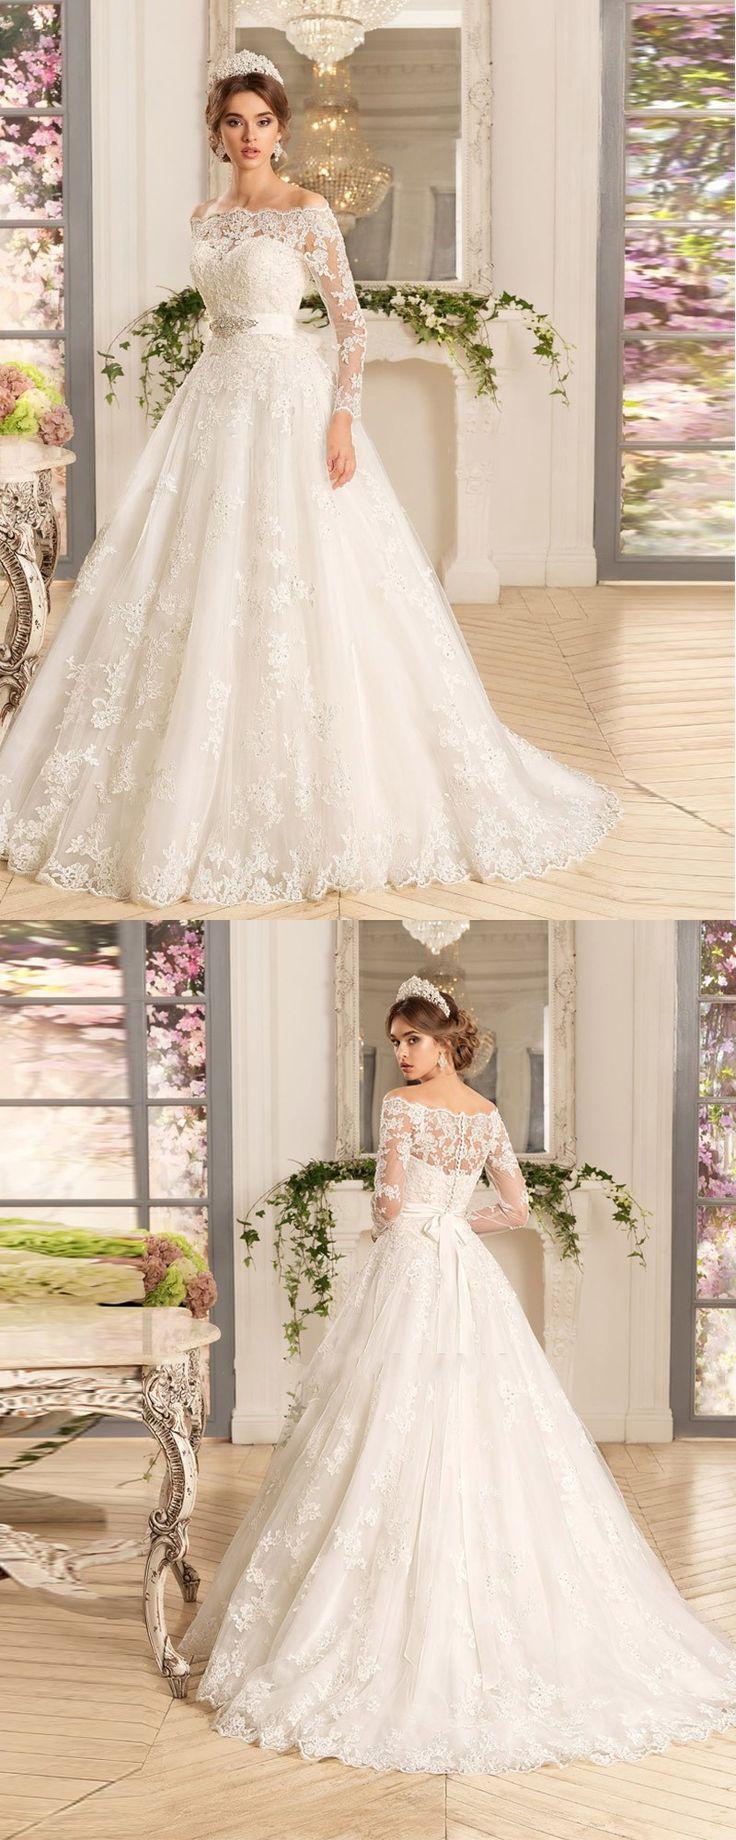 زفاف - Vestido De Noiva Manga Longa Three Quarter Sleeves A Line Wedding Dress With Sash Plus Size Lace Vintage Wedding Dresses 2016